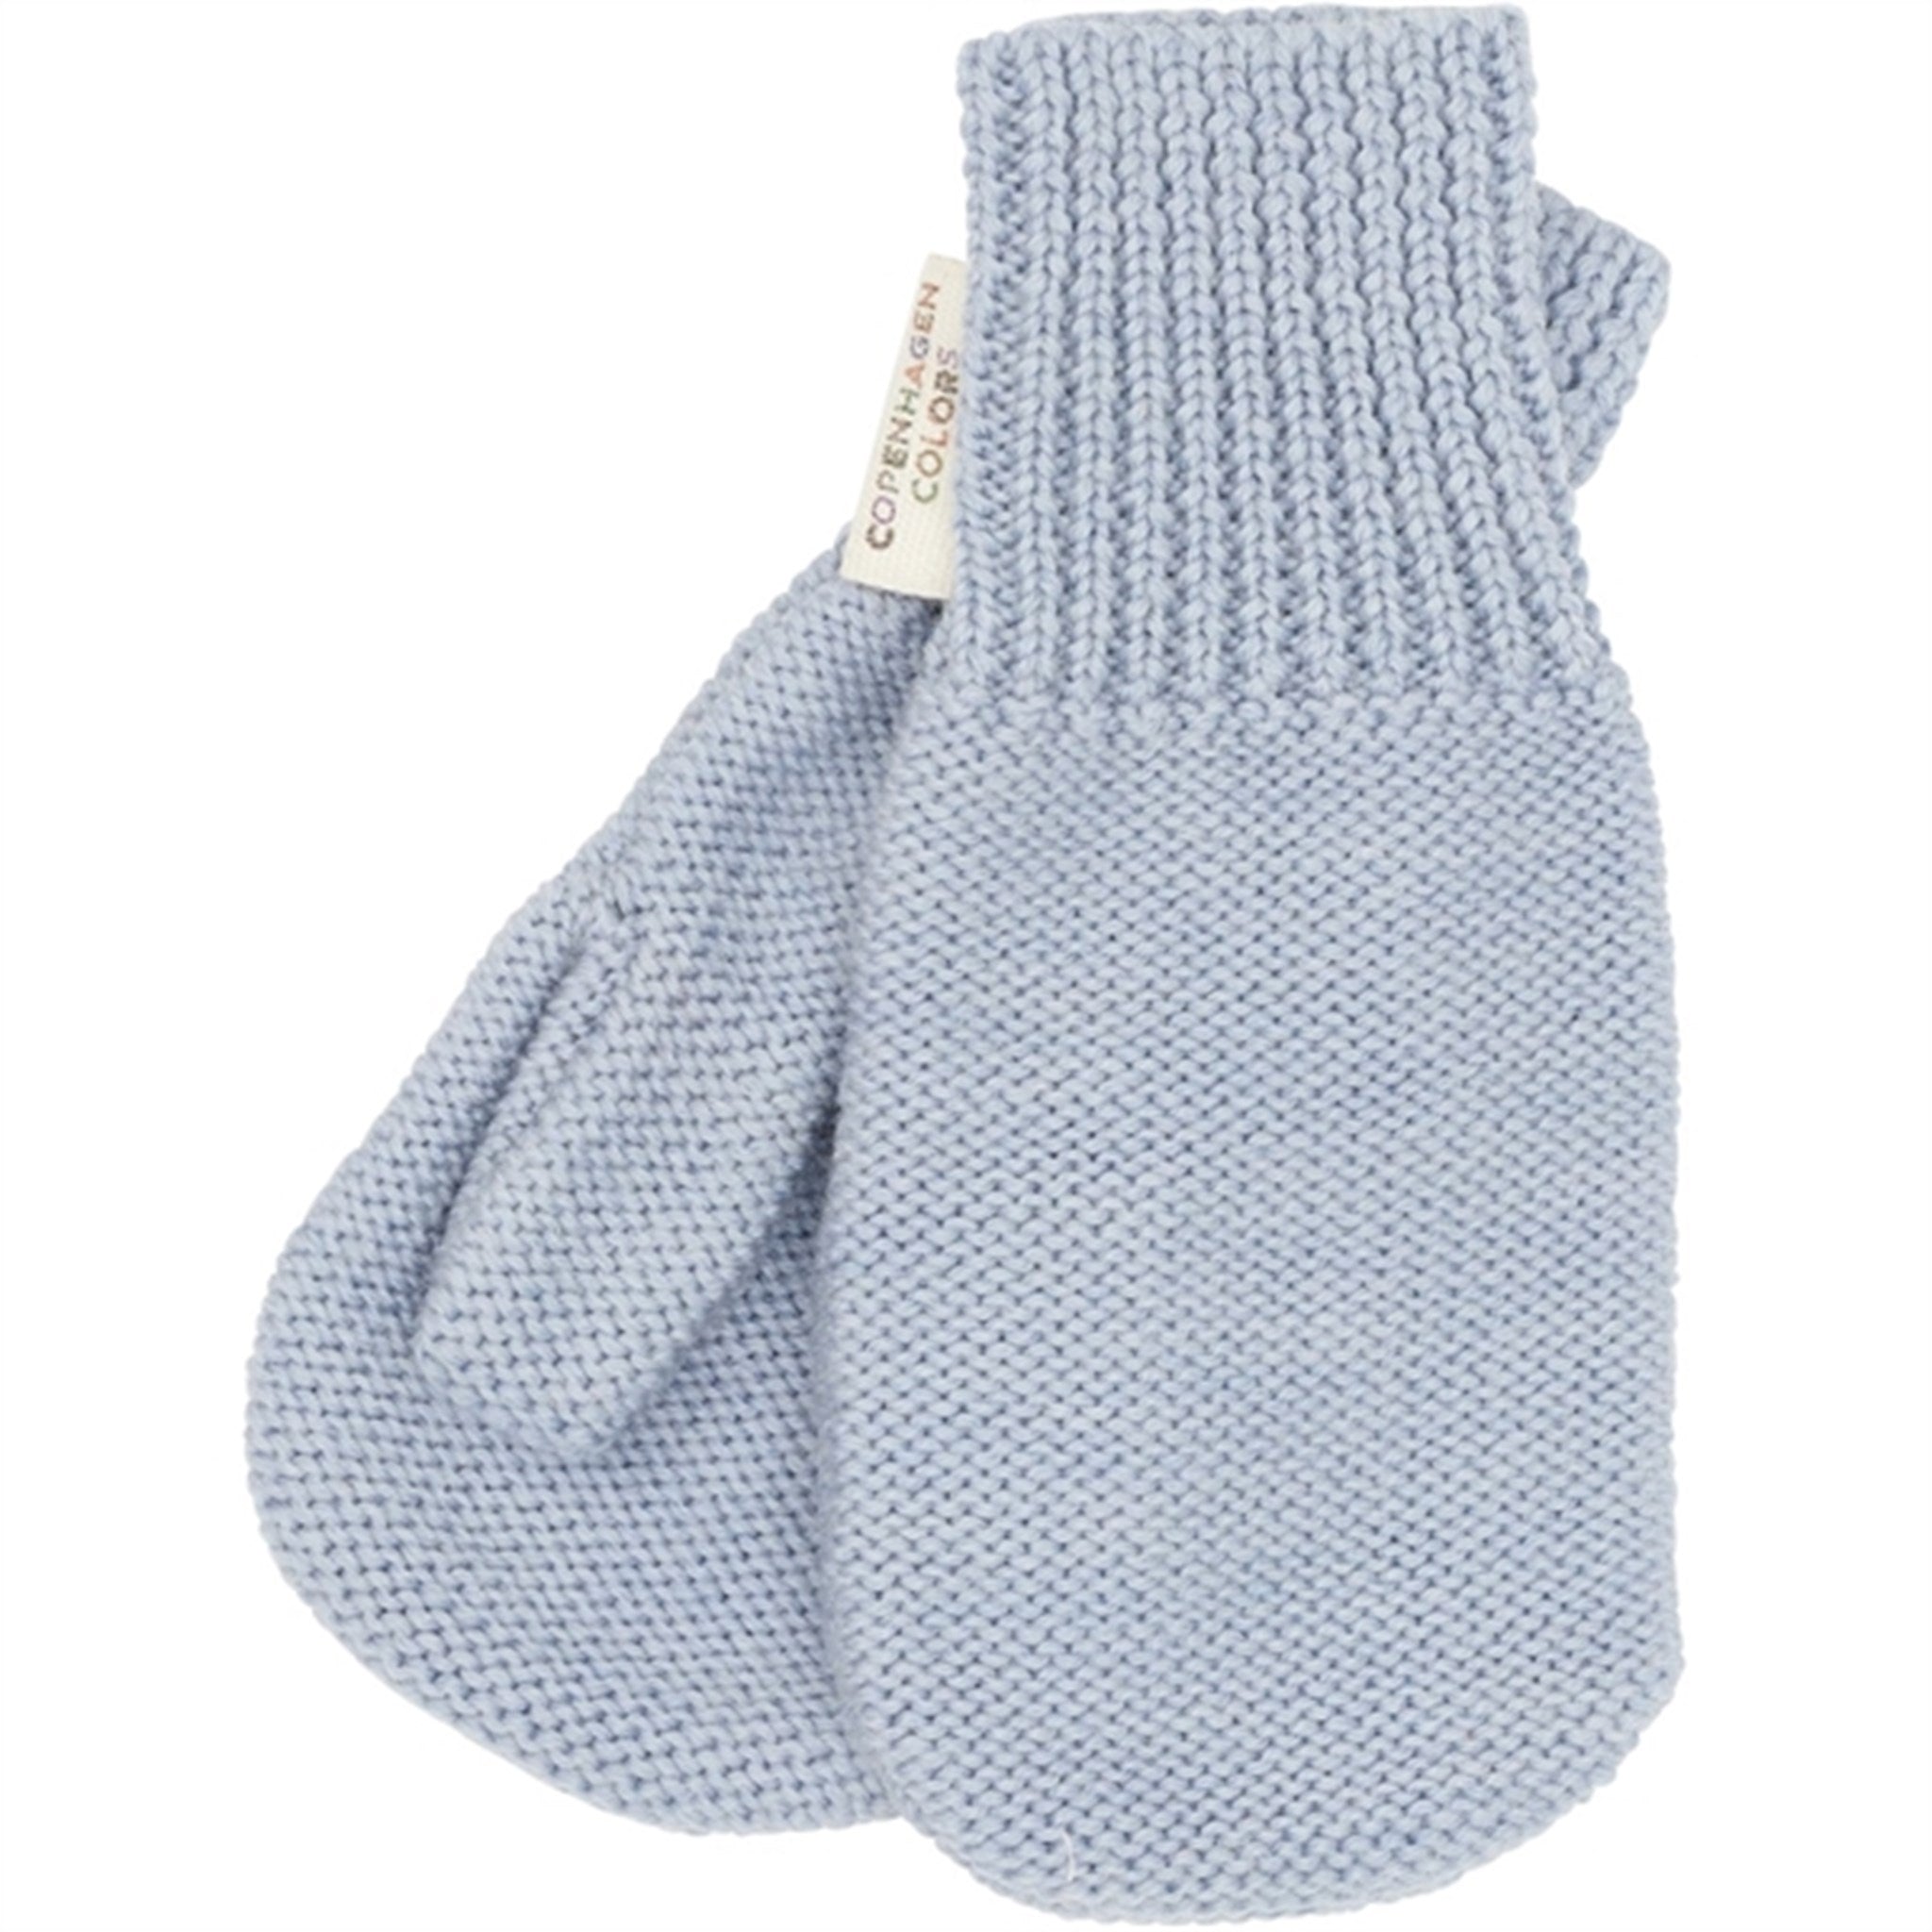 Copenhagen Colors Dusty Blue Merino Wool Knitted Mittens